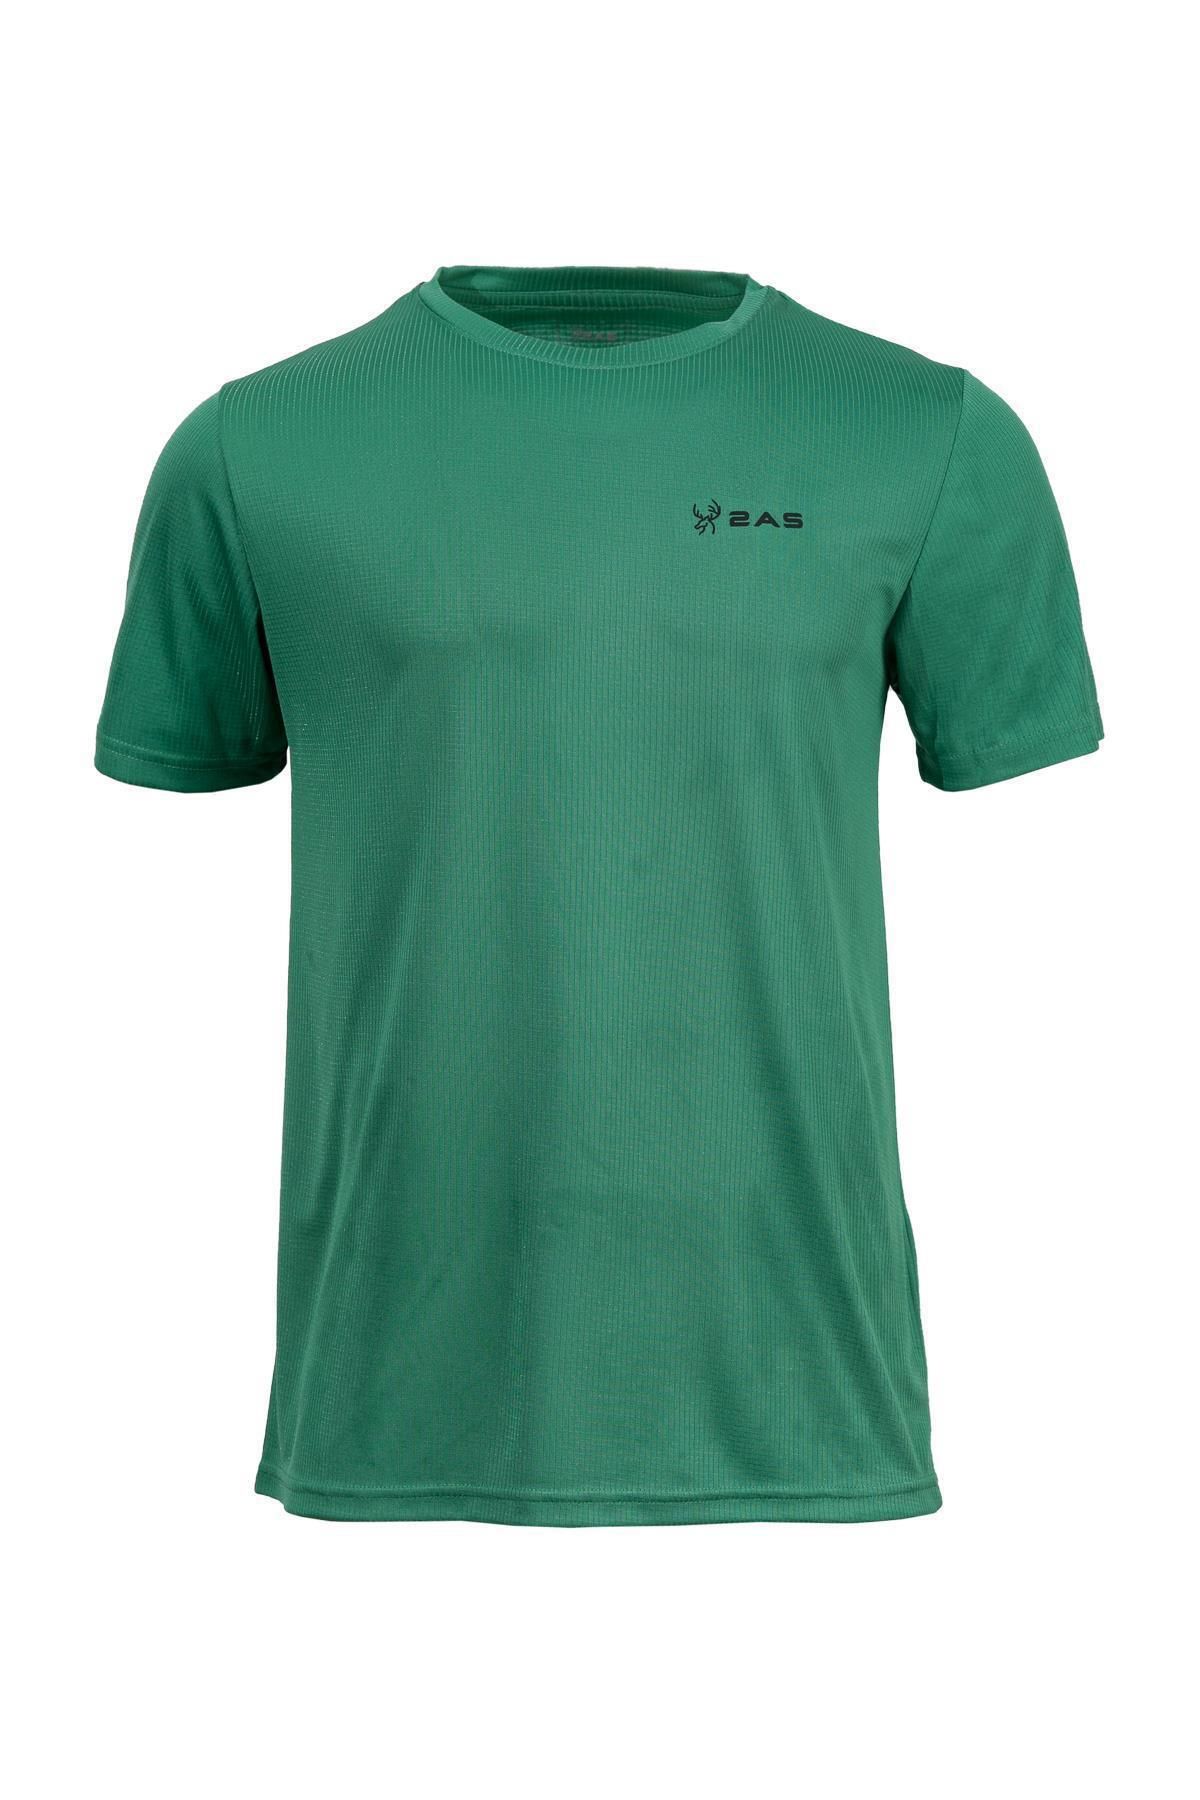 2AS 2astkas001 - Teka T-shirt